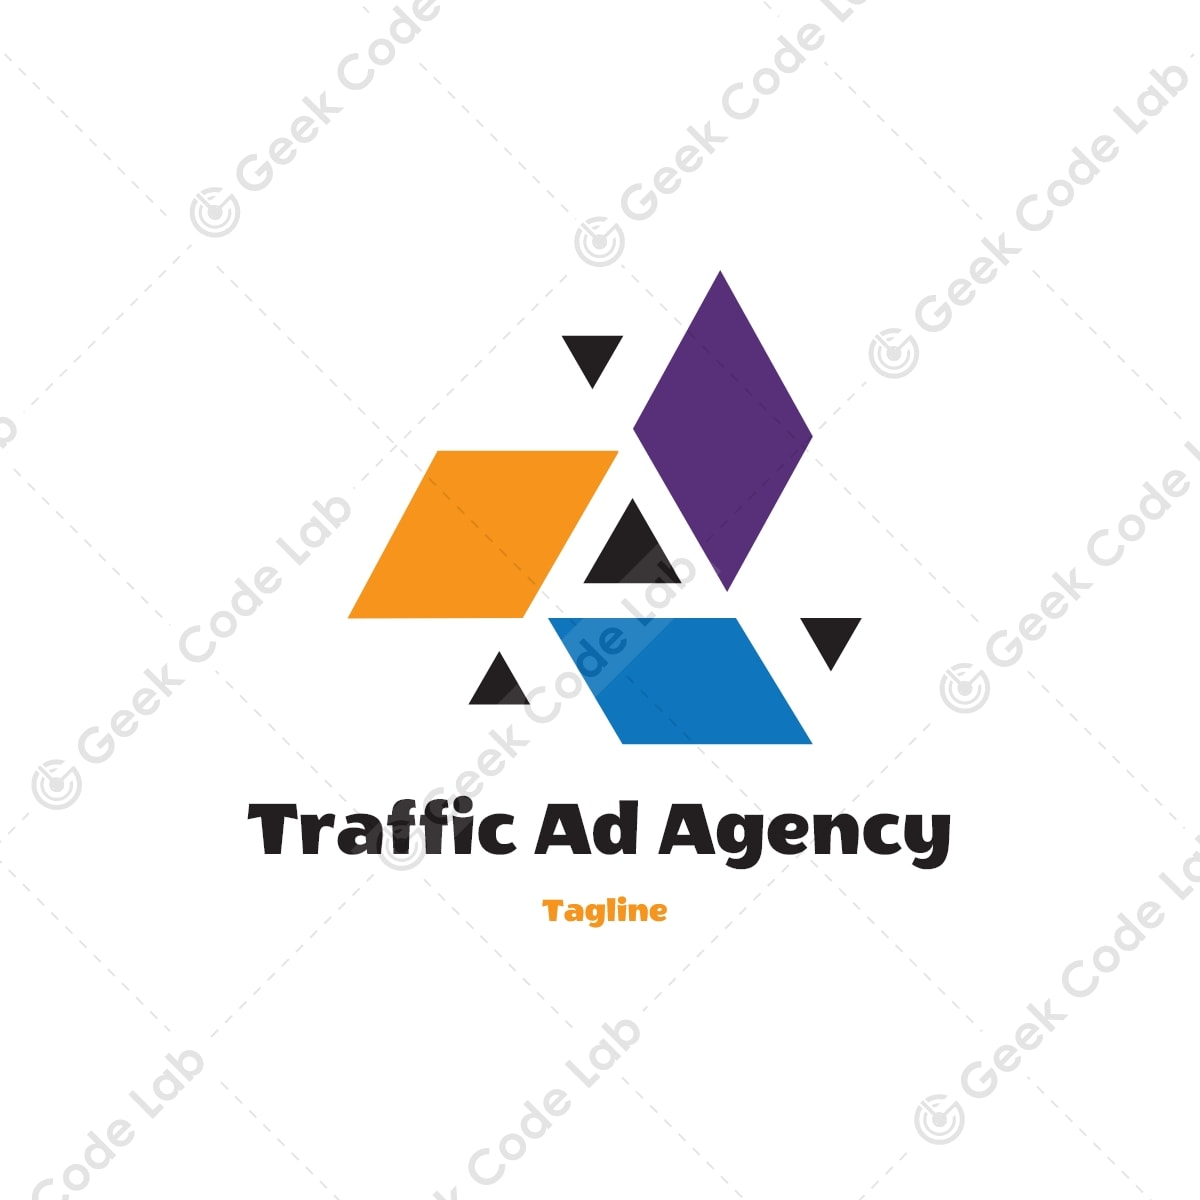 Traffic Ad Agency